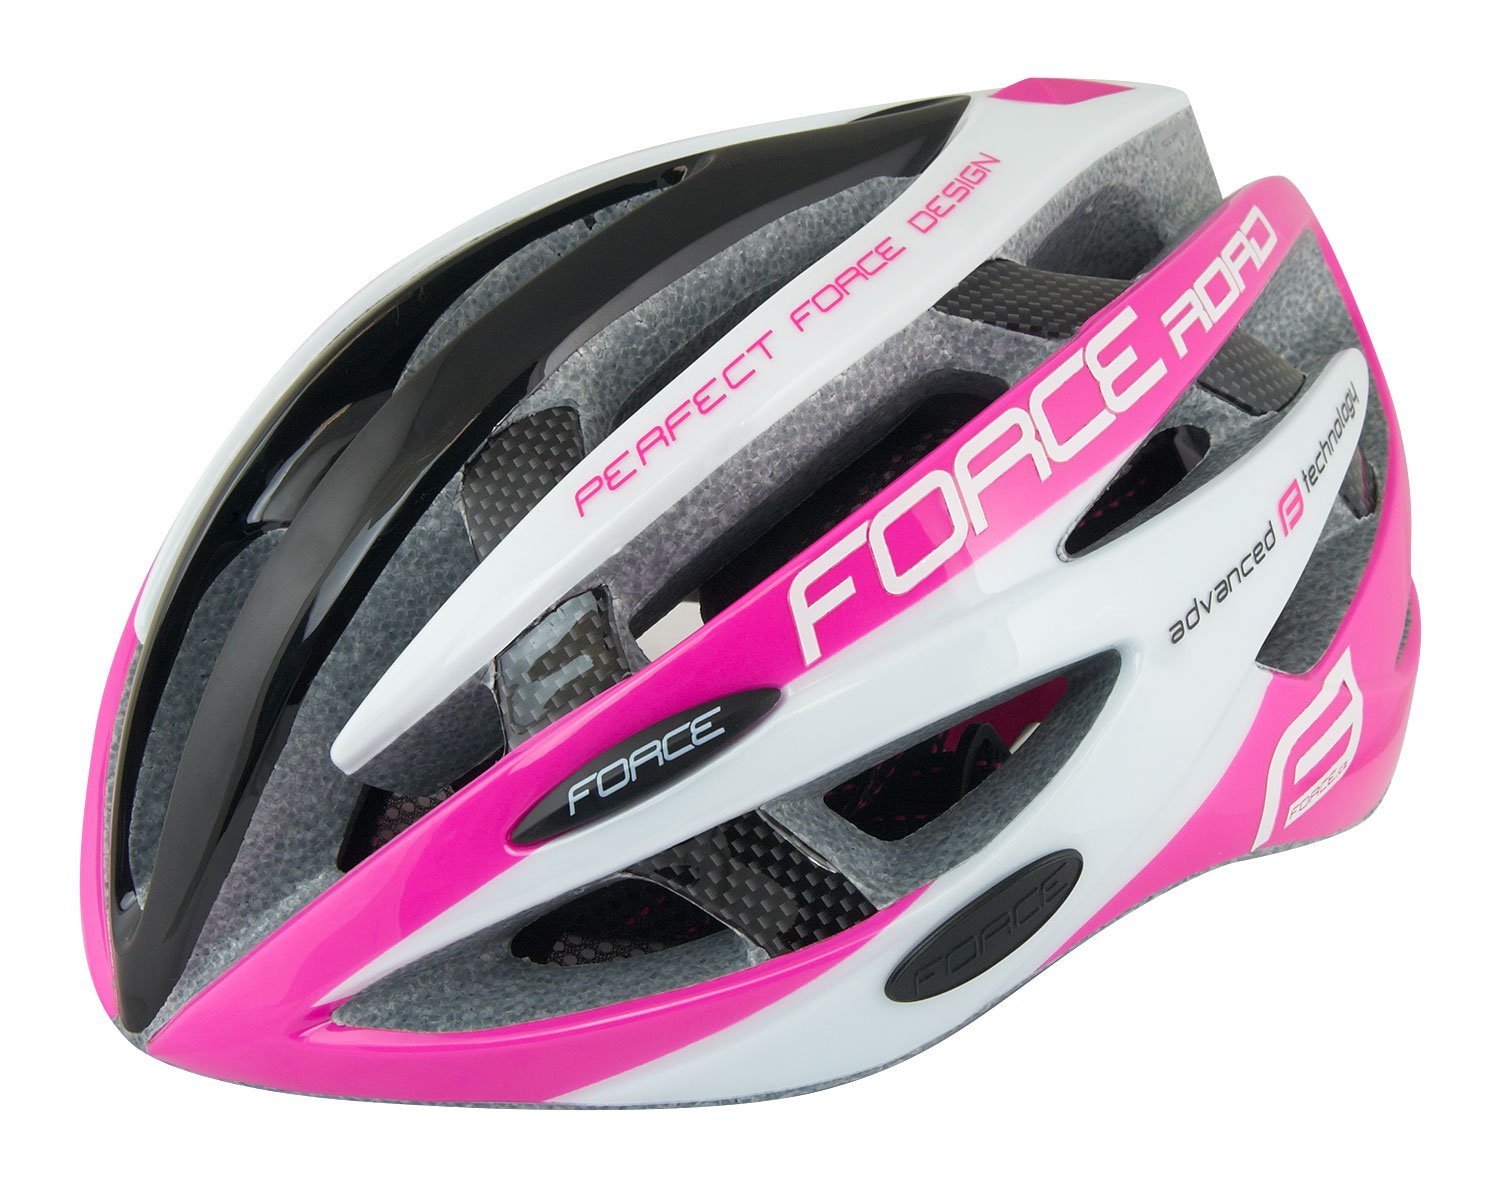 Force Road pink/white/black helmet.